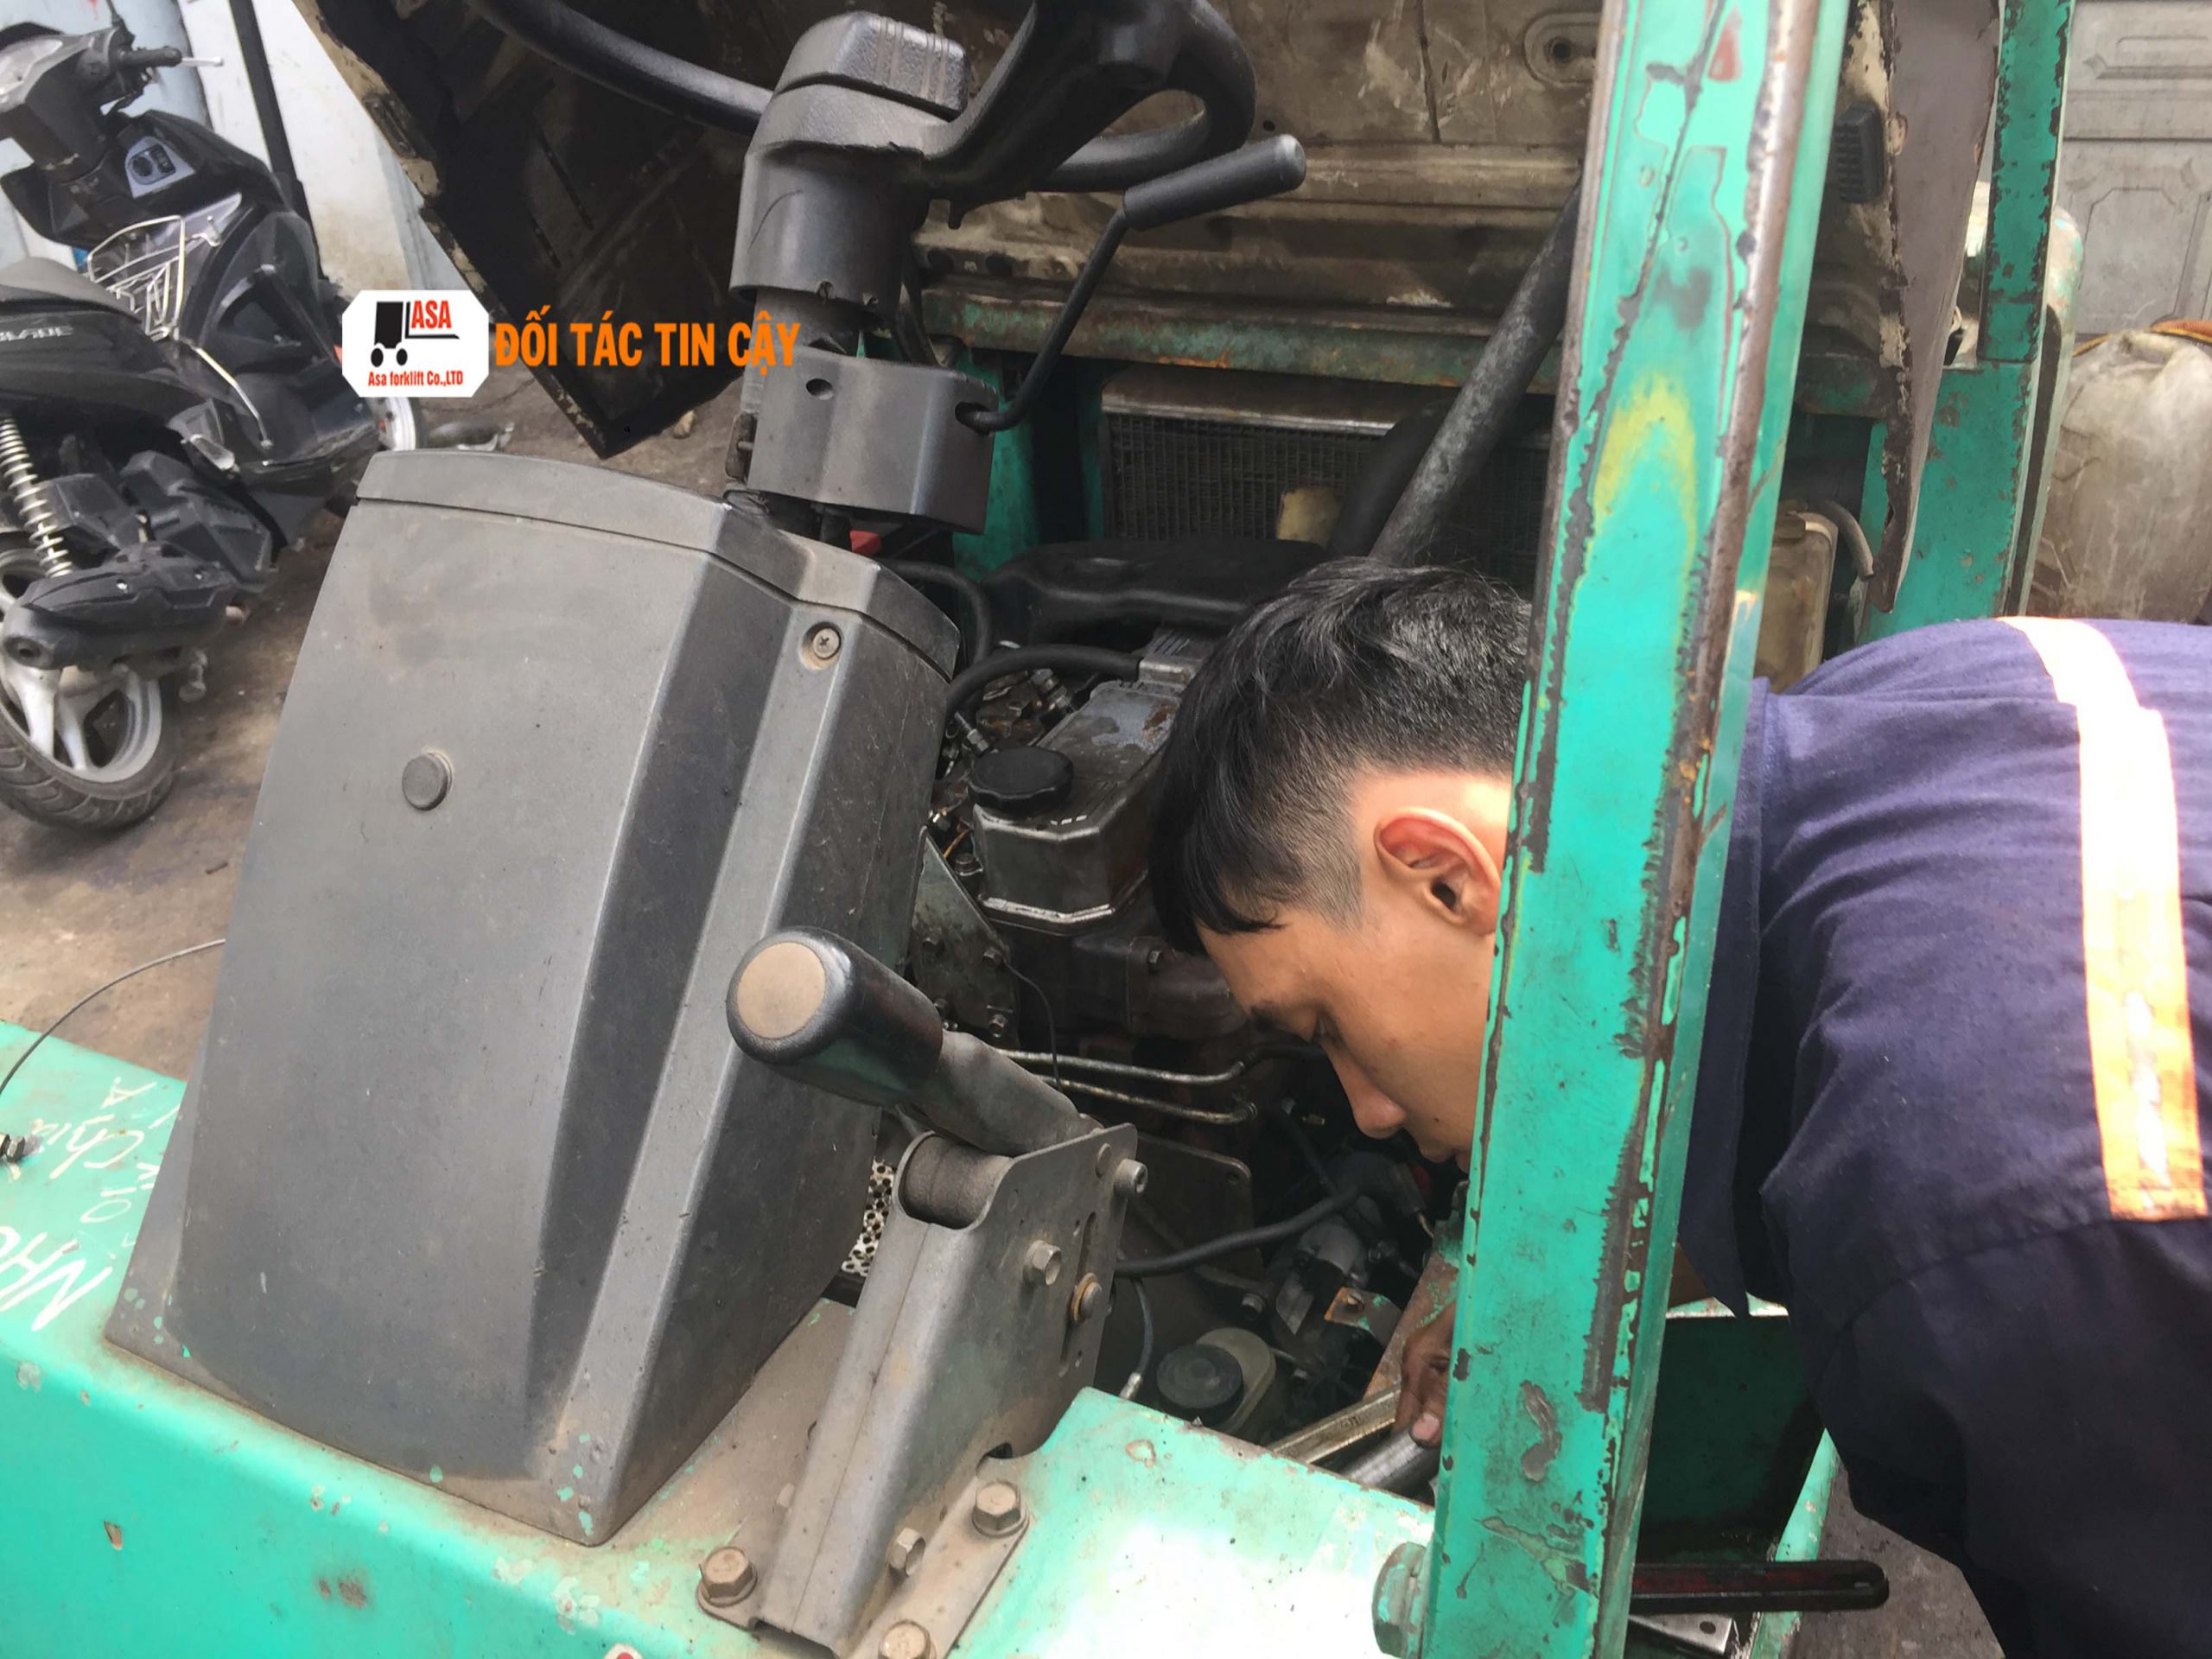 Dịch vụ sửa chữa xe nâng tại Bình Phước của Asa được nhiều doanh nghiệp tại đây tin dùng sử dụng